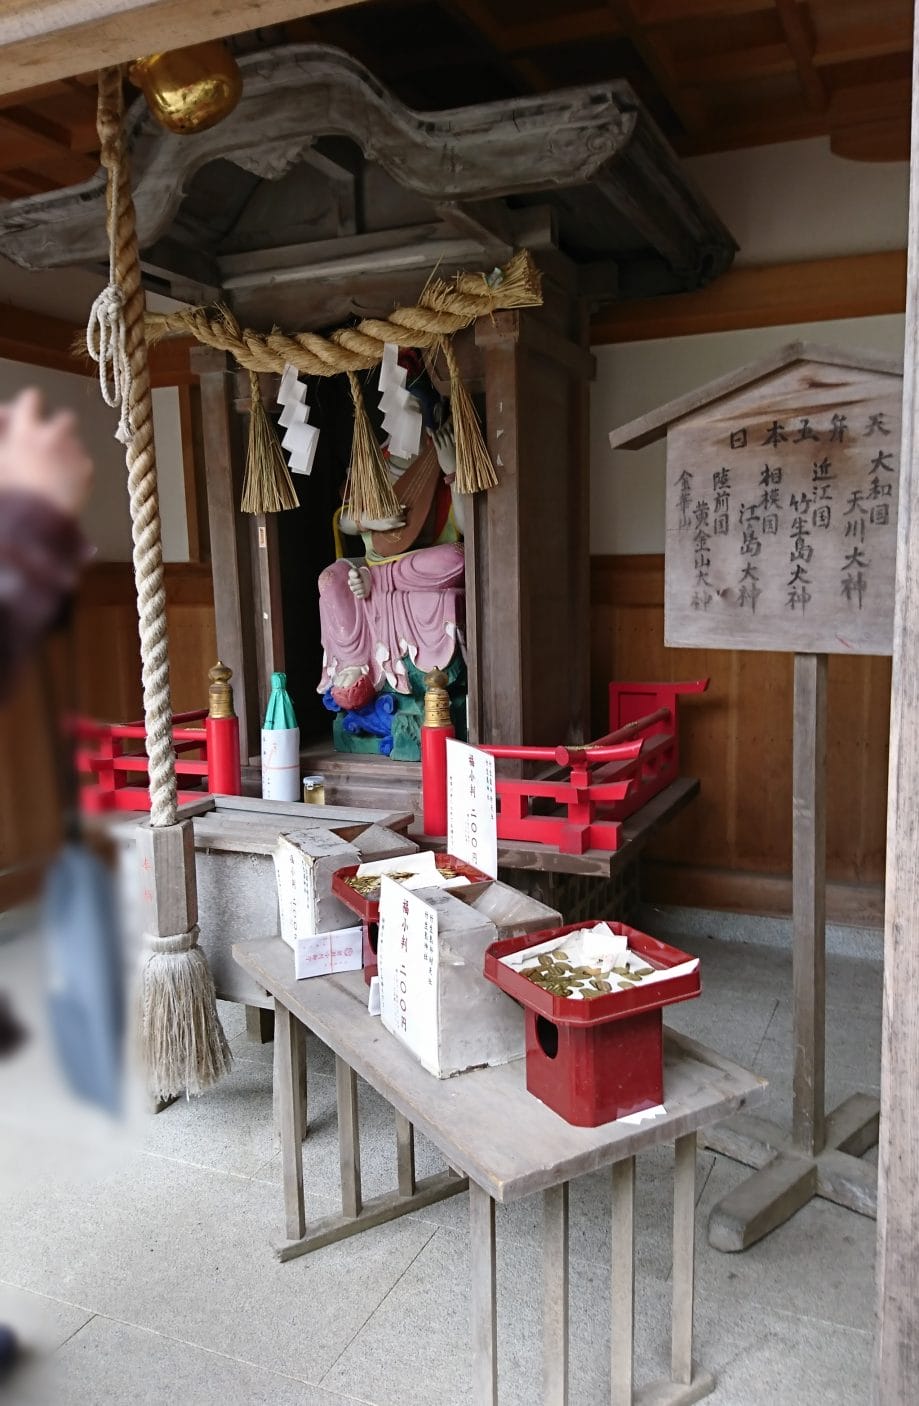 竹生島の都久夫須麻神社にいらっしゃる弁天様